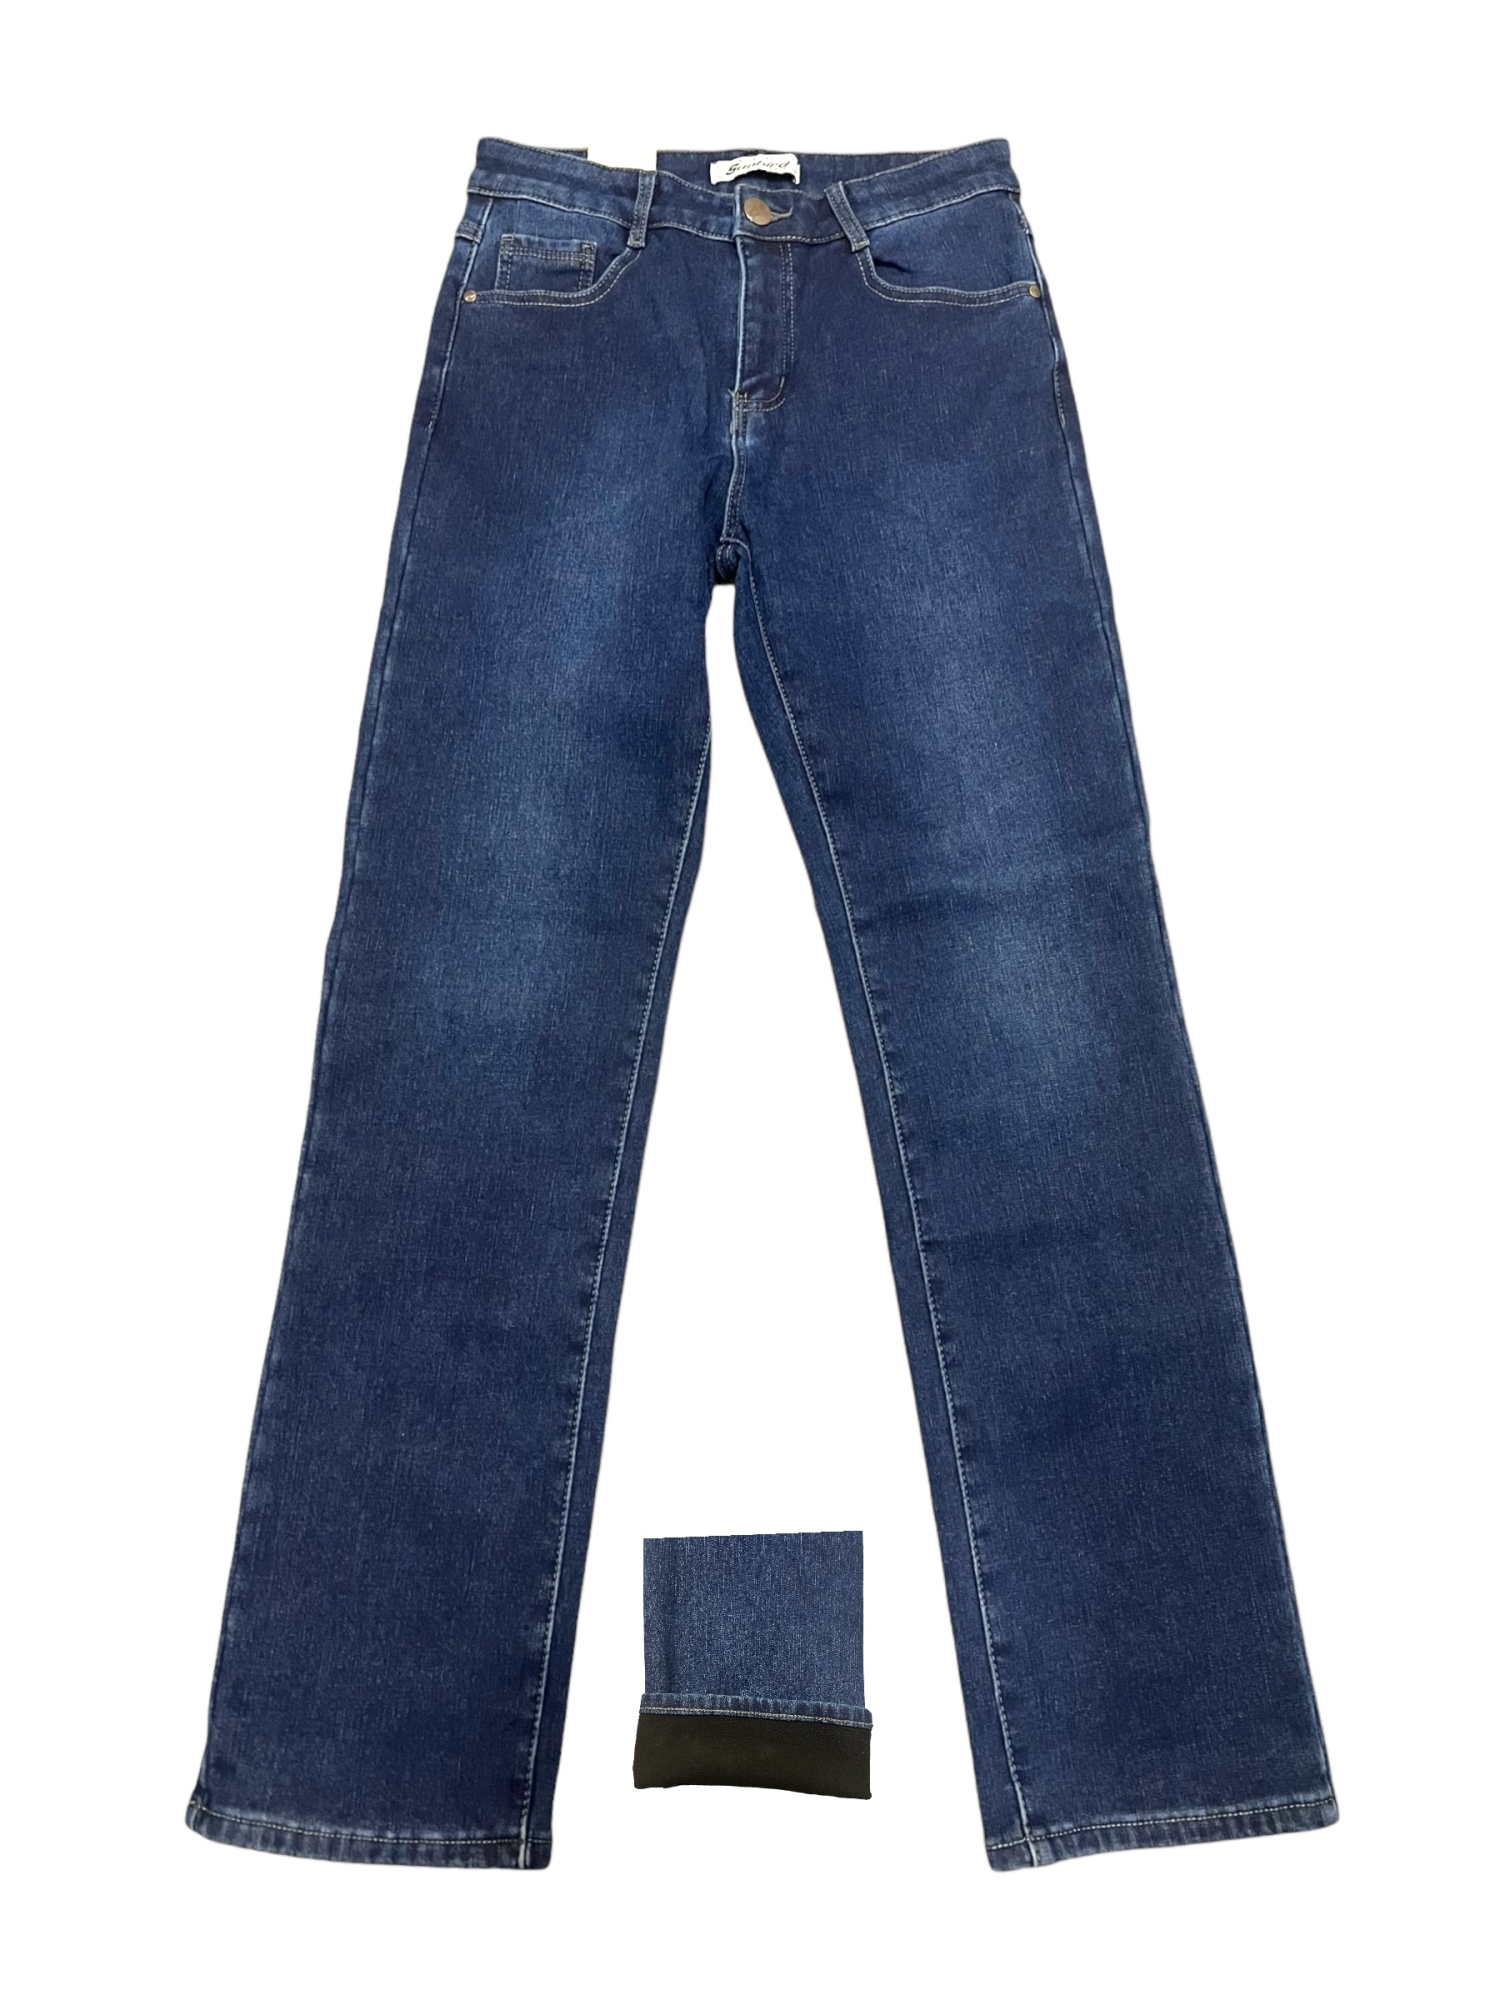 Женские тёплые джинсы на флизовой подкладке sunbird